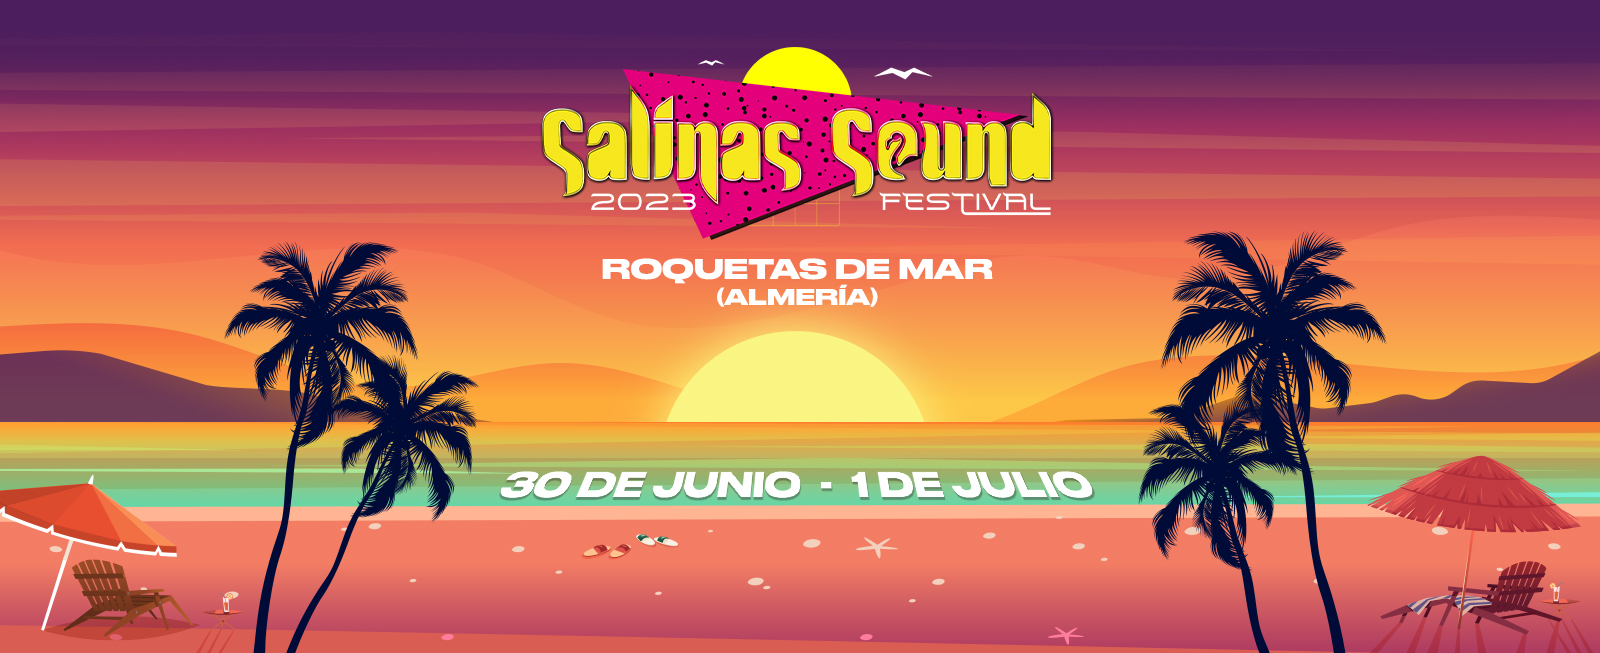 SALINAS SOUND FESTIVAL 2023